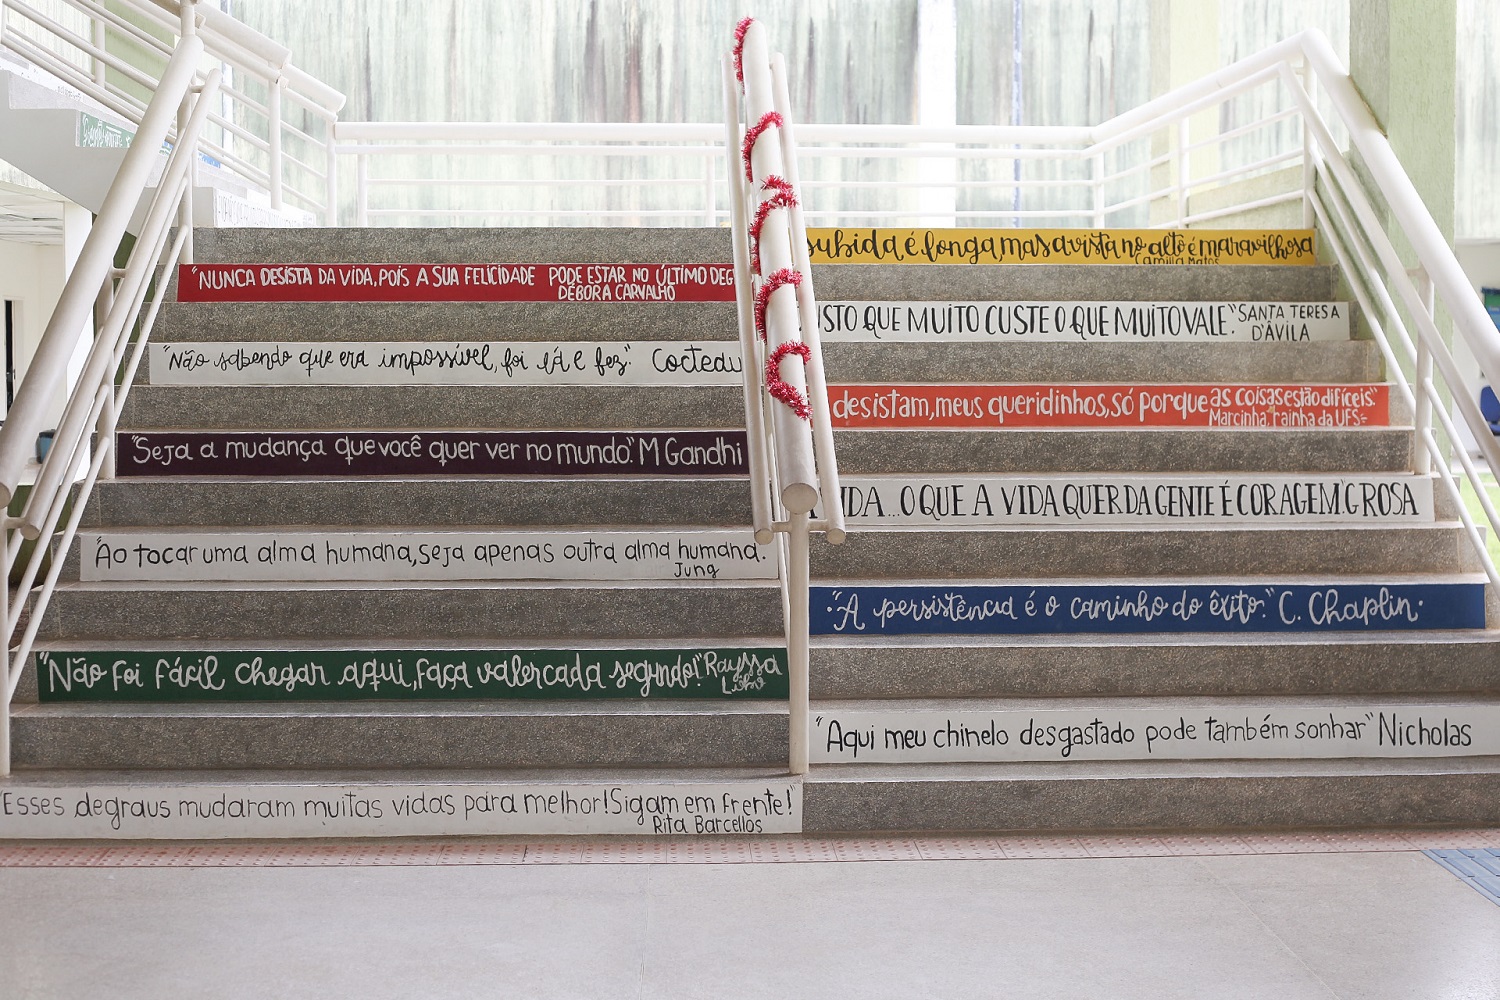 Frases da escadaria foram sugeridas pela comunidade acadêmica. Imagem: Ana Laura Farias/ Campus Lagarto